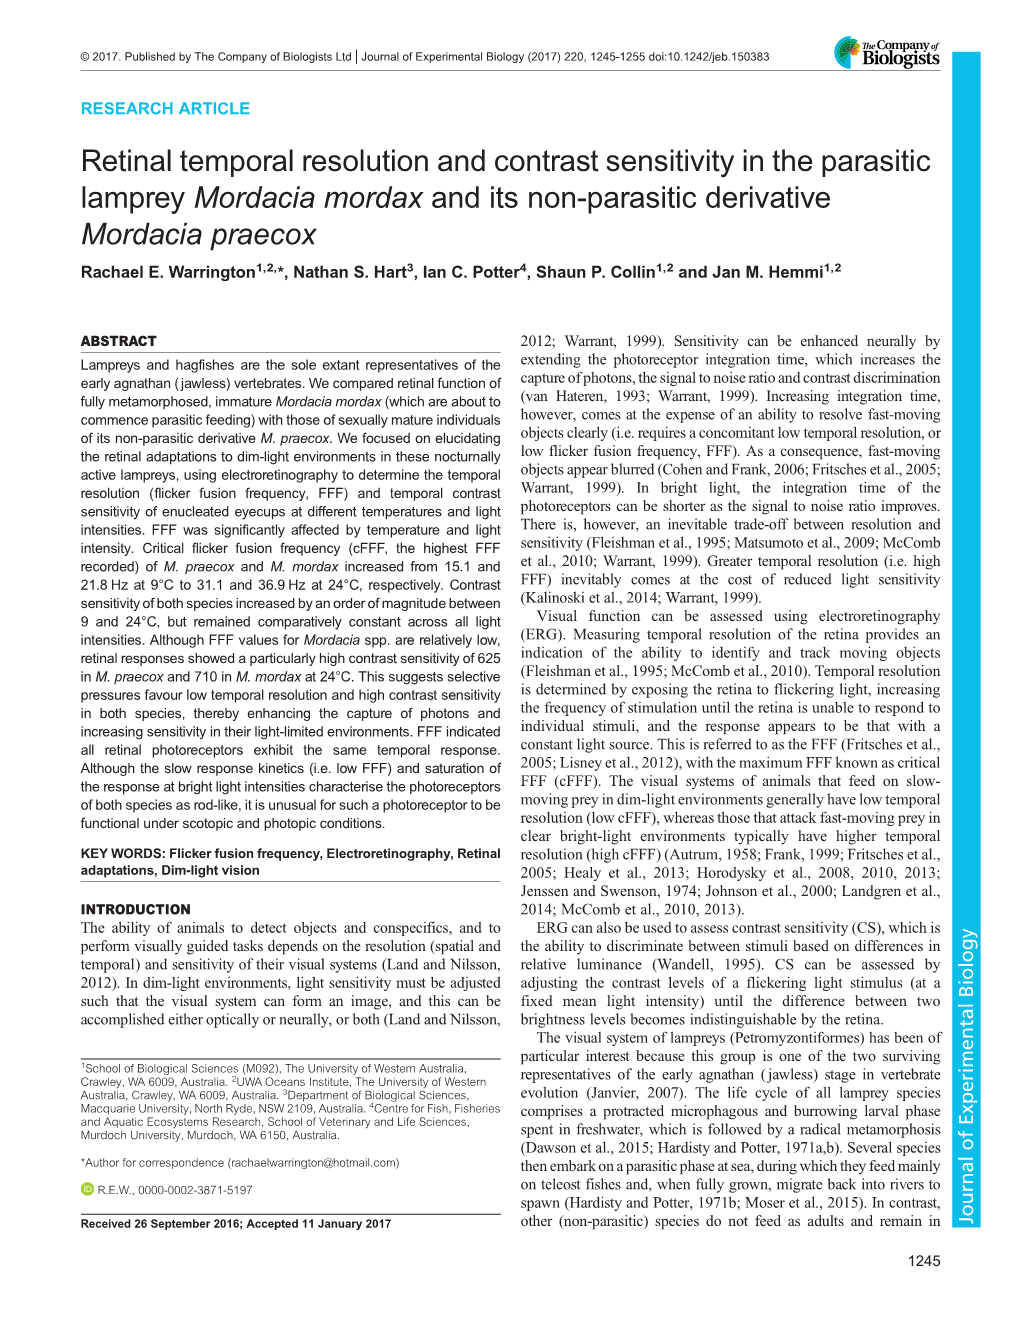 Retinal Temporal Resolution and Contrast Sensitivity in the Parasitic Lamprey Mordacia Mordax and Its Non-Parasitic Derivative Mordacia Praecox Rachael E